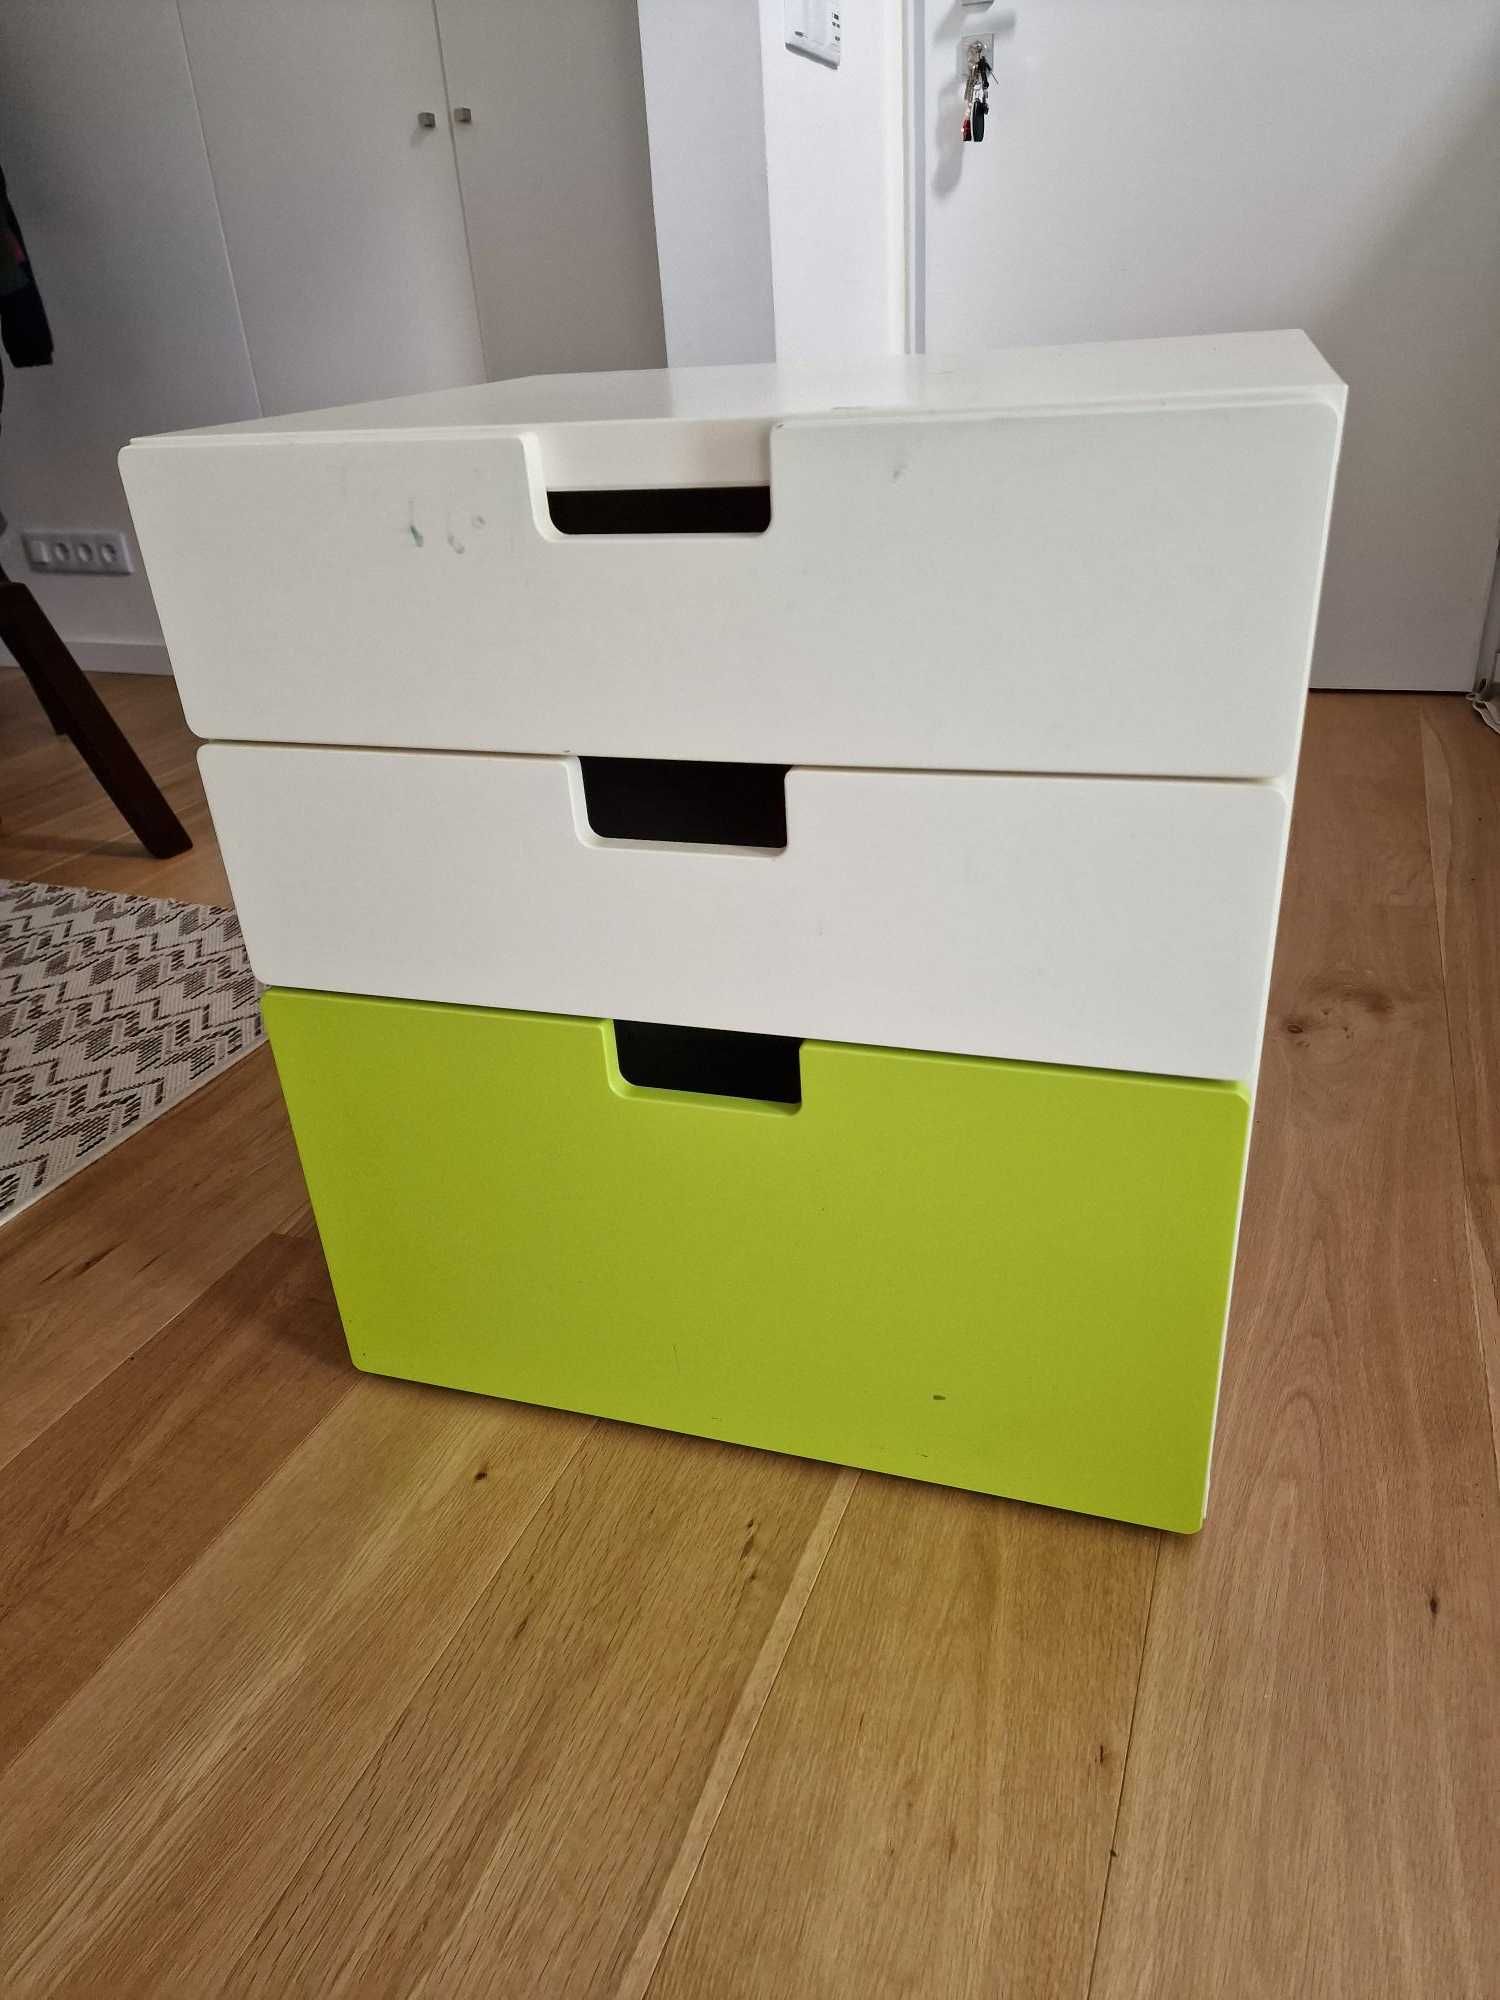 Conjunto de 3 armários do Ikea - mobiliário criança em bom estado